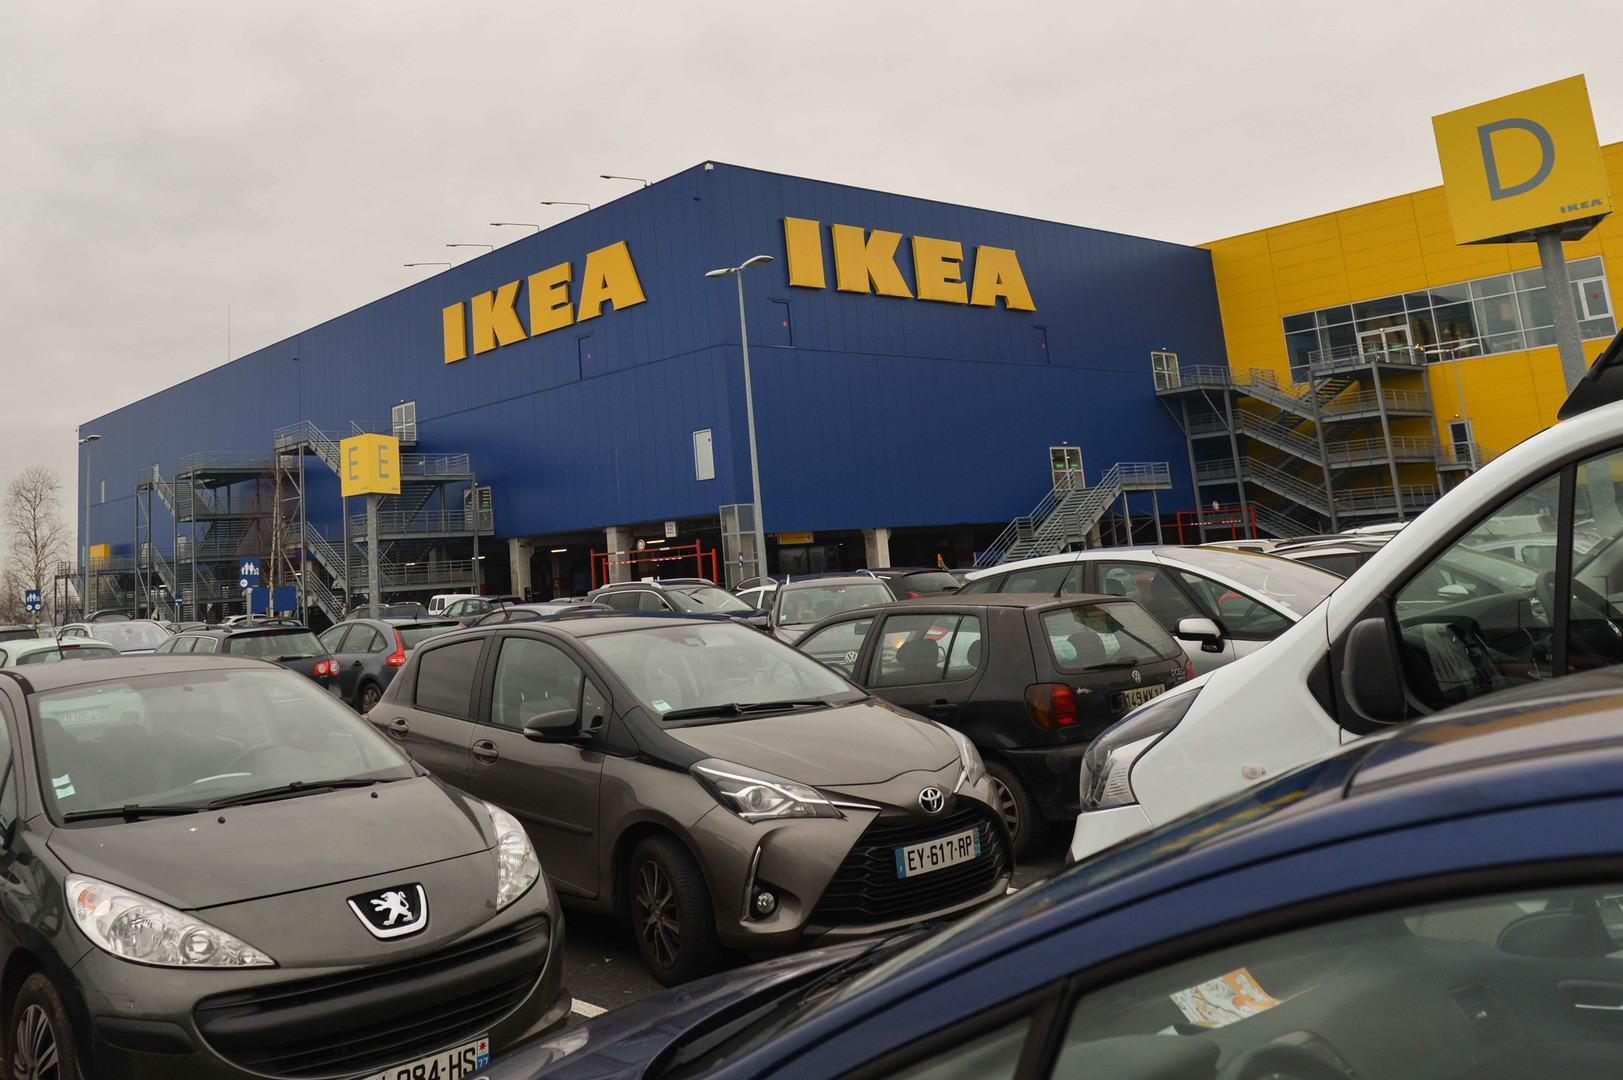 IKEA benennt "Weihnachten" in "Winterfest" um - Entrüstung bei skandinavischen Politikern